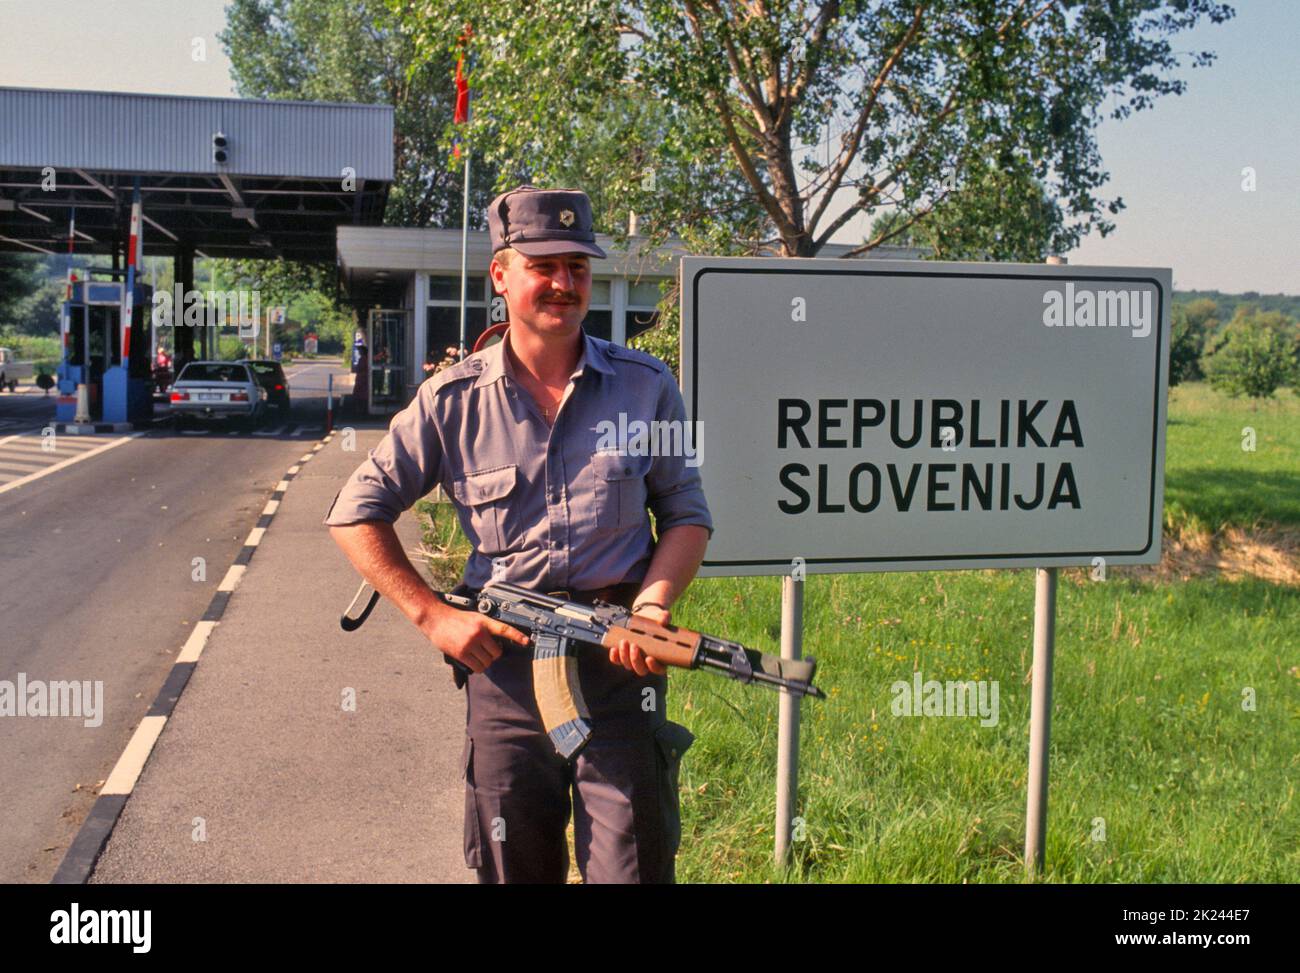 - Slowenische Milizen nehmen während des Unabhängigkeitskrieges von Serbien vom Juli 1991 den Grenzübergang Fernetti mit Italien in Besitz - Miliziani sloveni prendono possesso del valico di Fernetti con l'Italia durante la guerra di indipendenza dalla Serbia del luglio 1991 Stockfoto